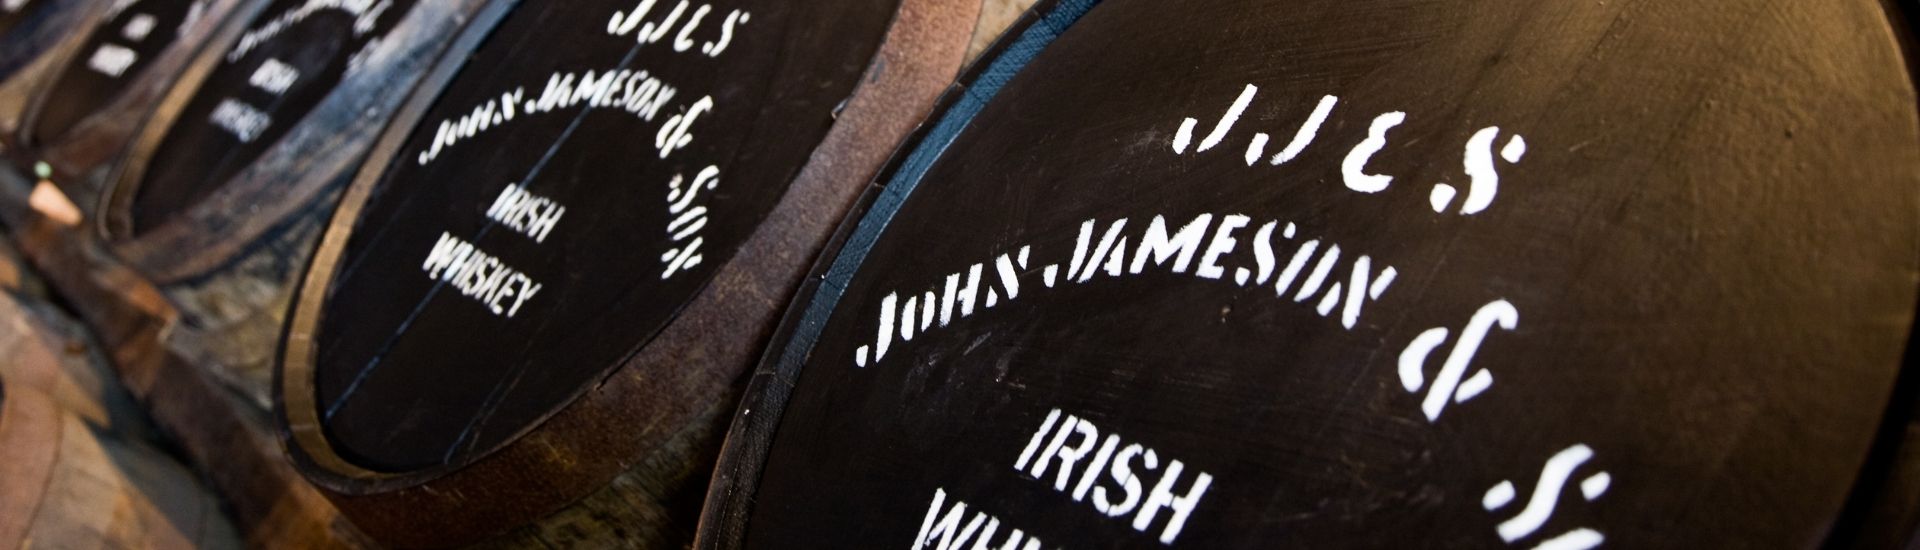 jameson irish whiskey barrels